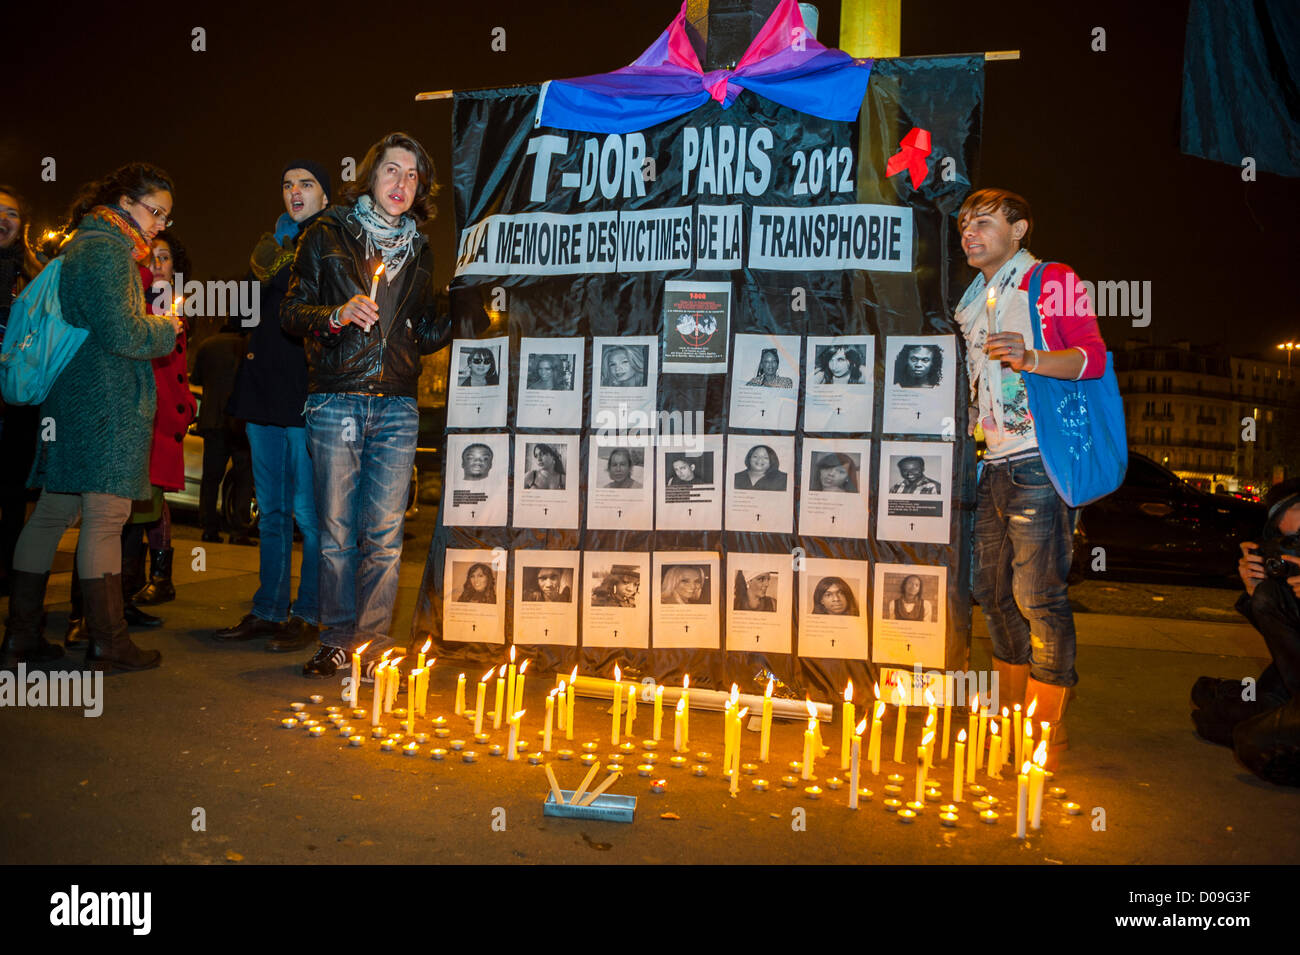 Paris, France, personnes du Groupe, femmes, Candlelight Memorial, transgenre international, Transsexuel Memorial Day, 'T-Dor', manifestations dans la rue la nuit, homophobie transphobie Banque D'Images